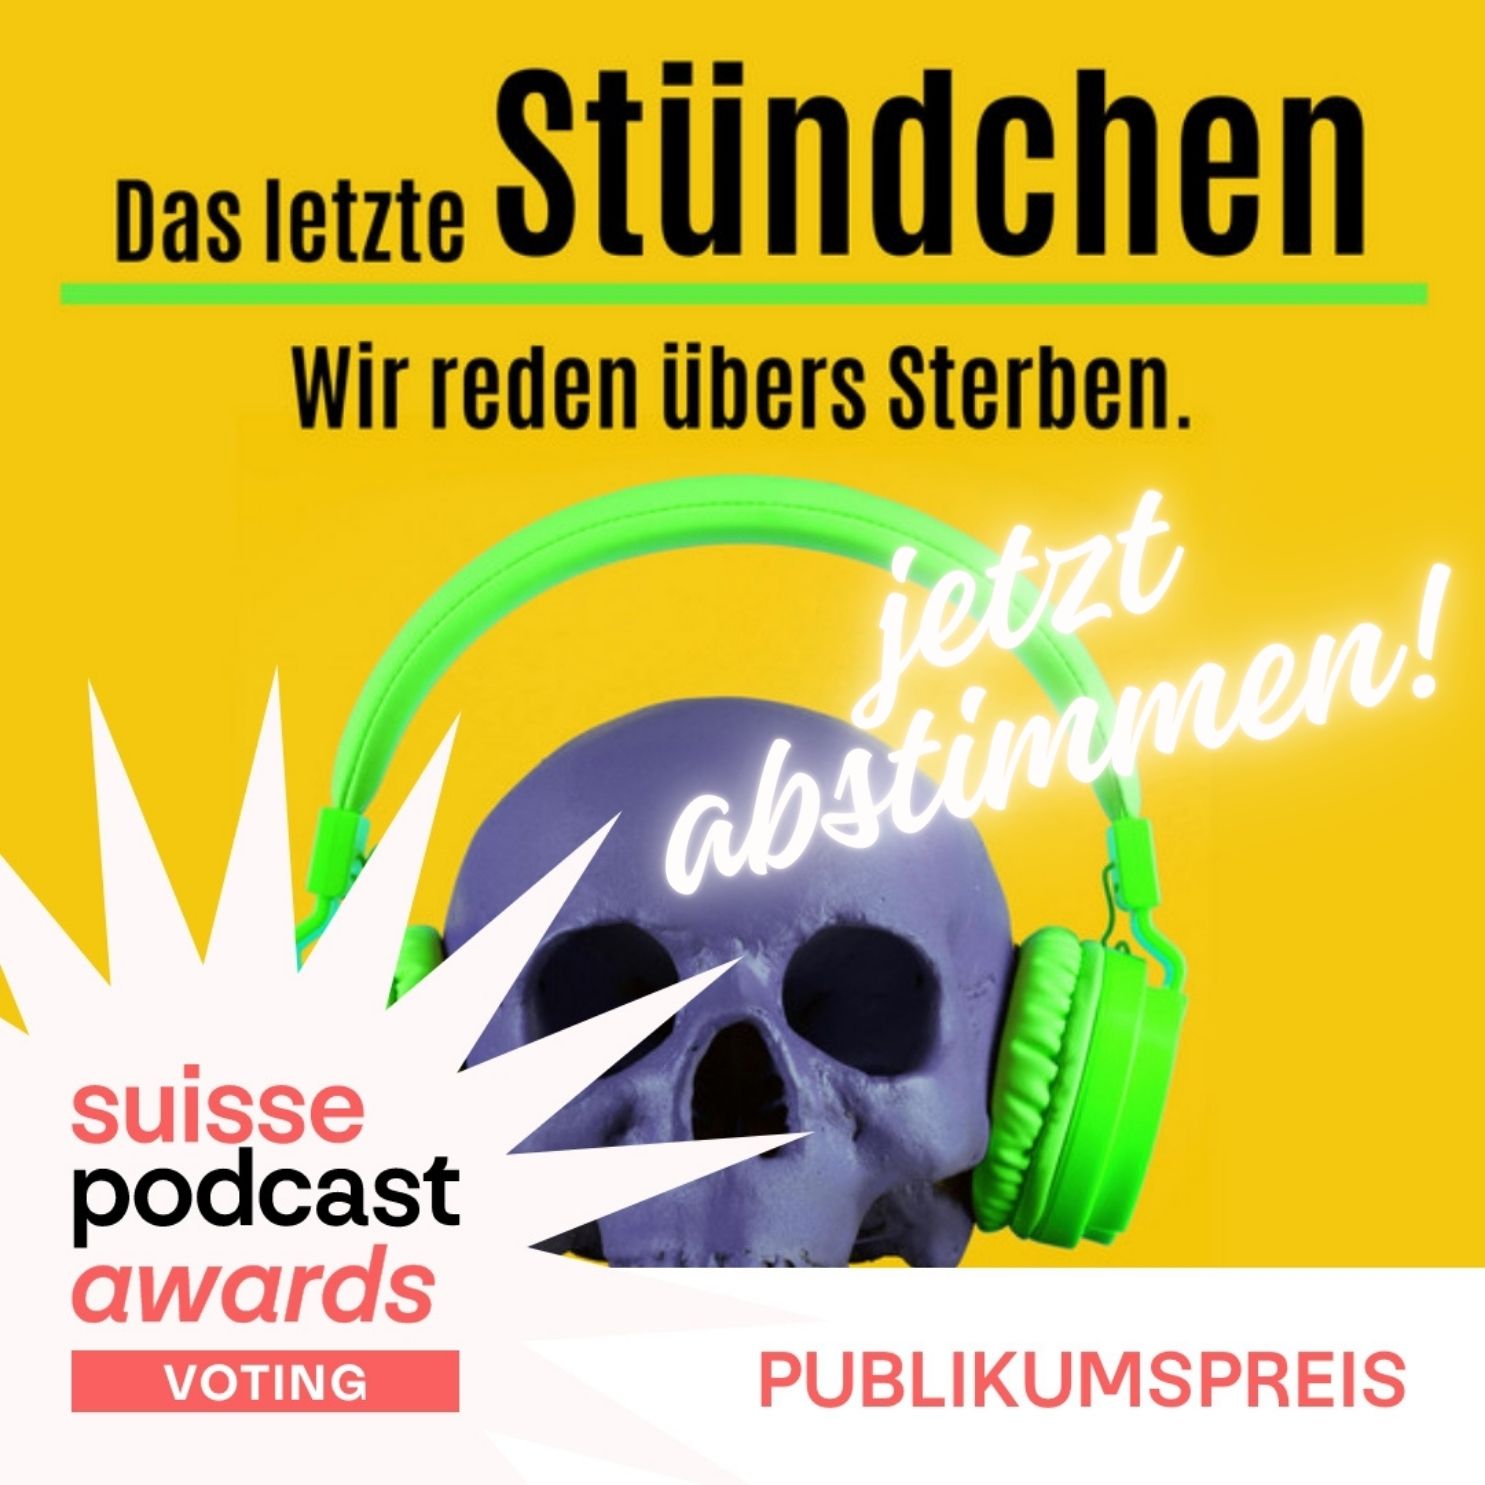 Deine Stimme für Das letzte Stündchen: Publikumspreis Suisse Podcast Awards